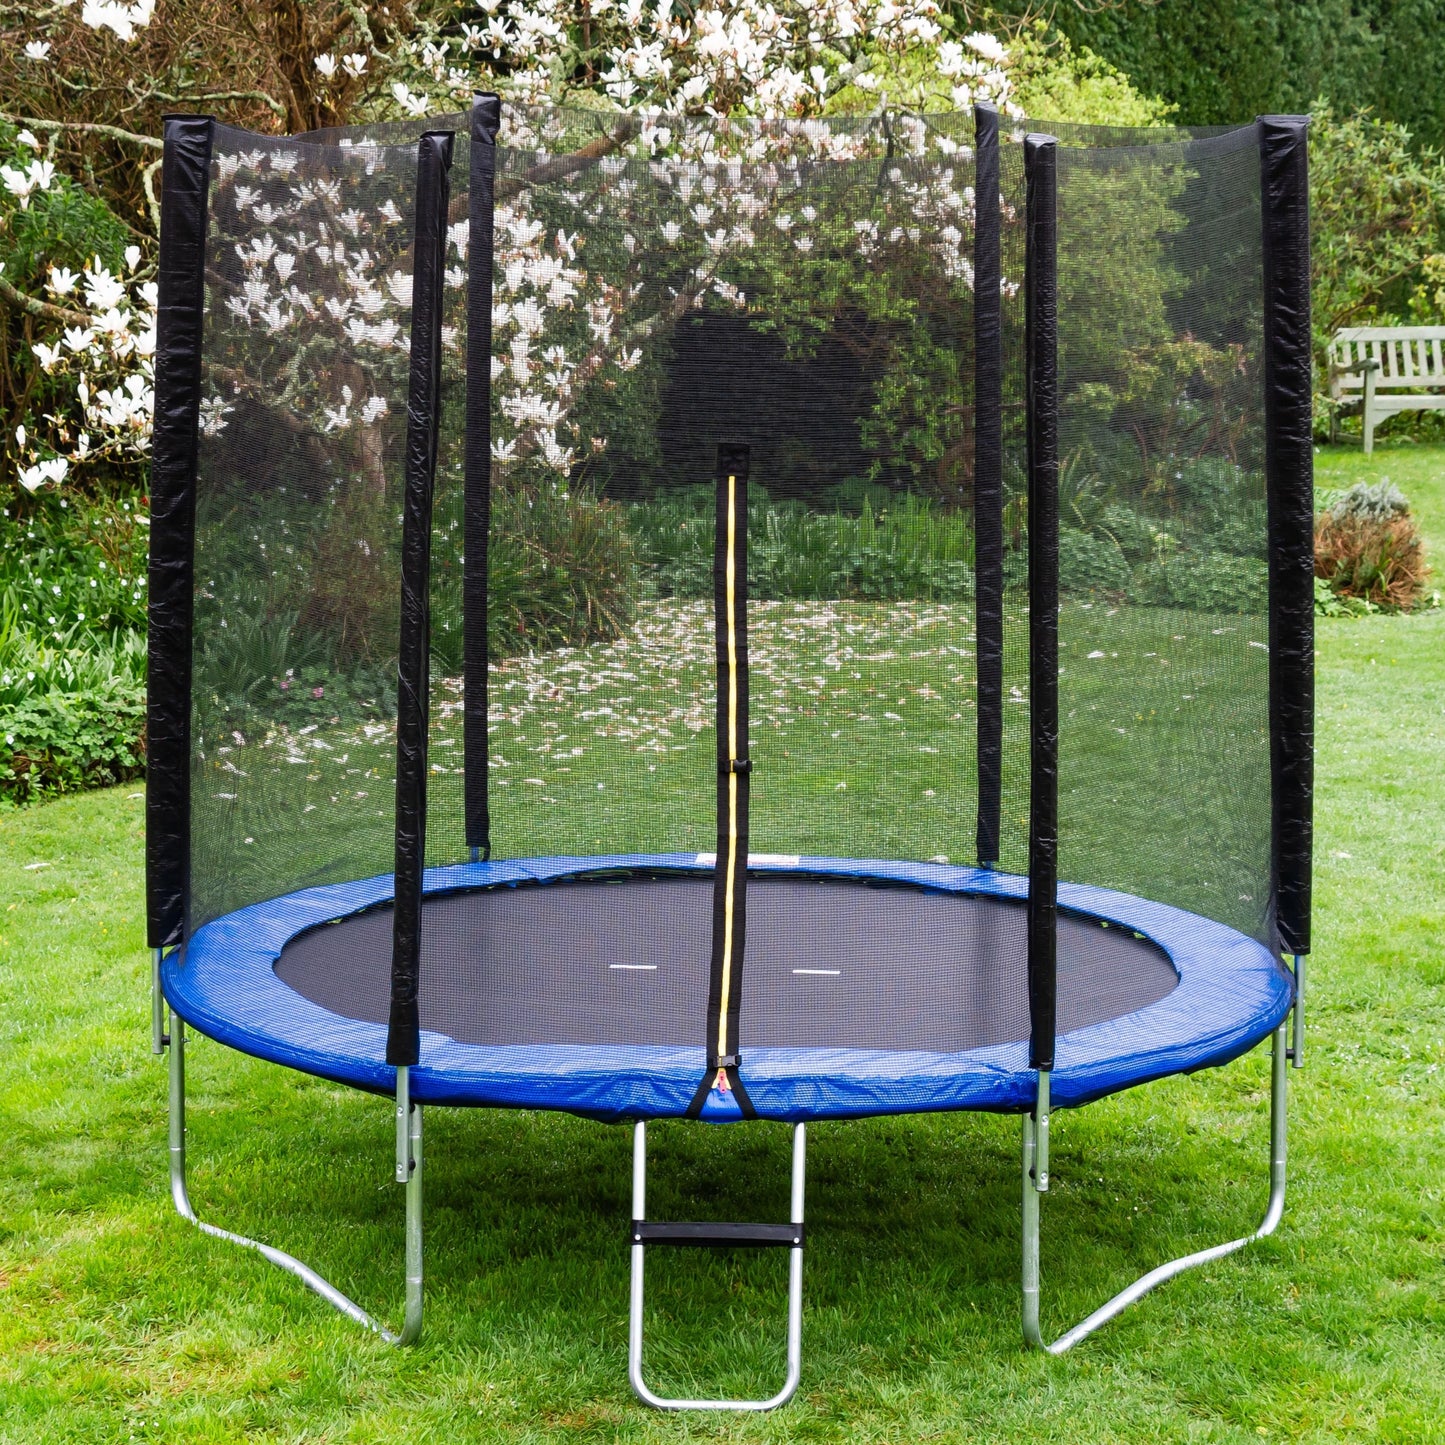 Acrobat 10ft trampoline package